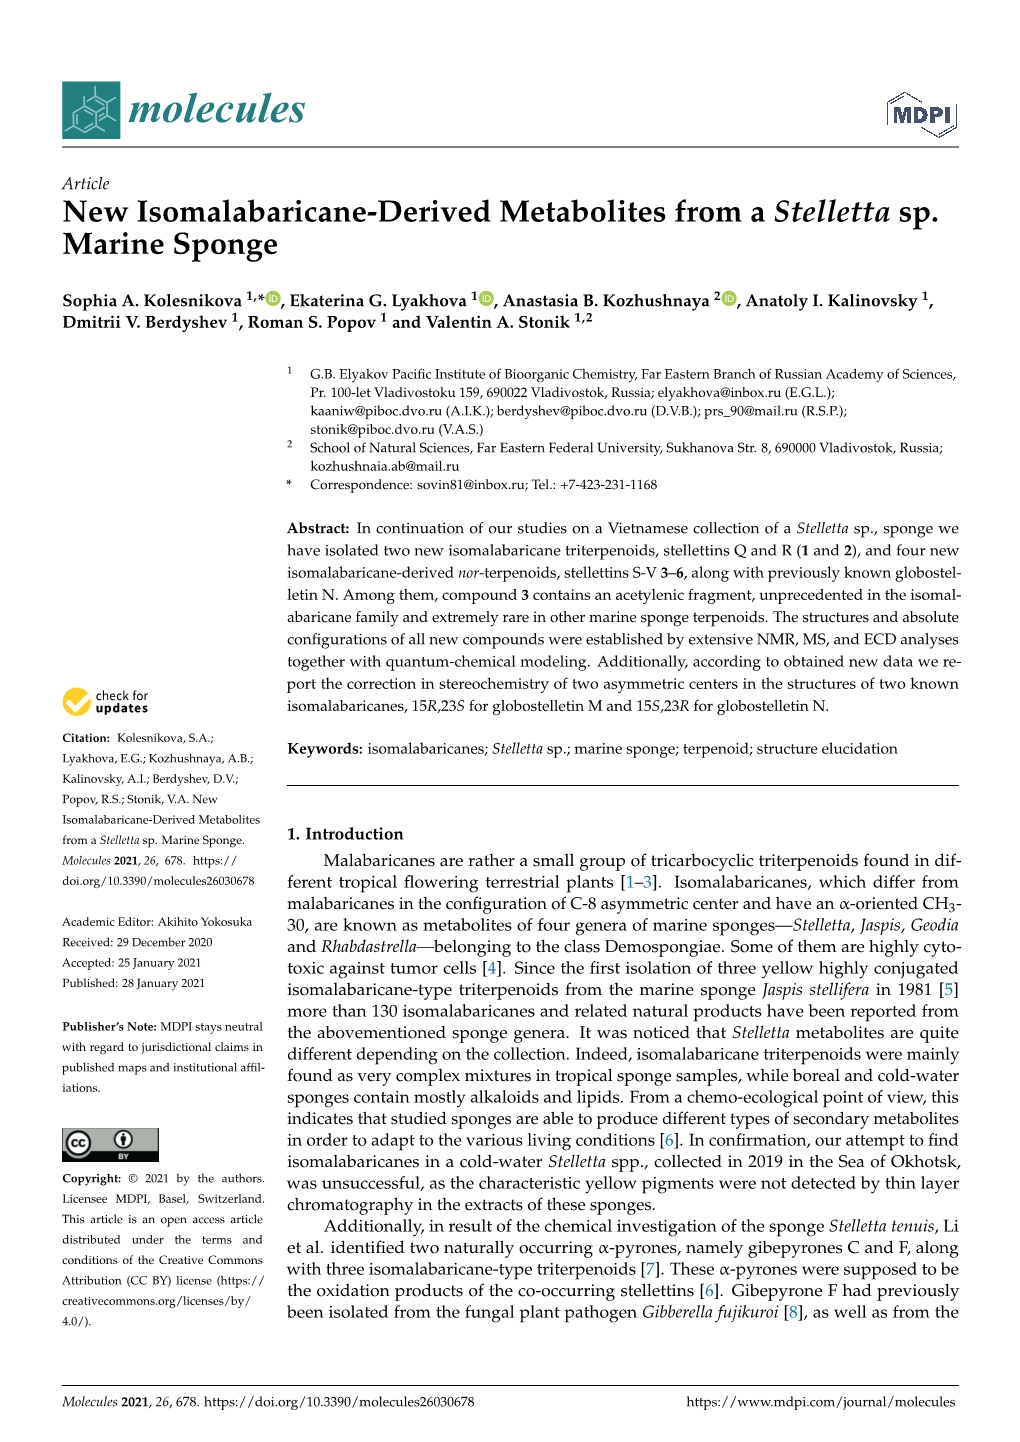 New Isomalabaricane-Derived Metabolites from a Stelletta Sp. Marine Sponge